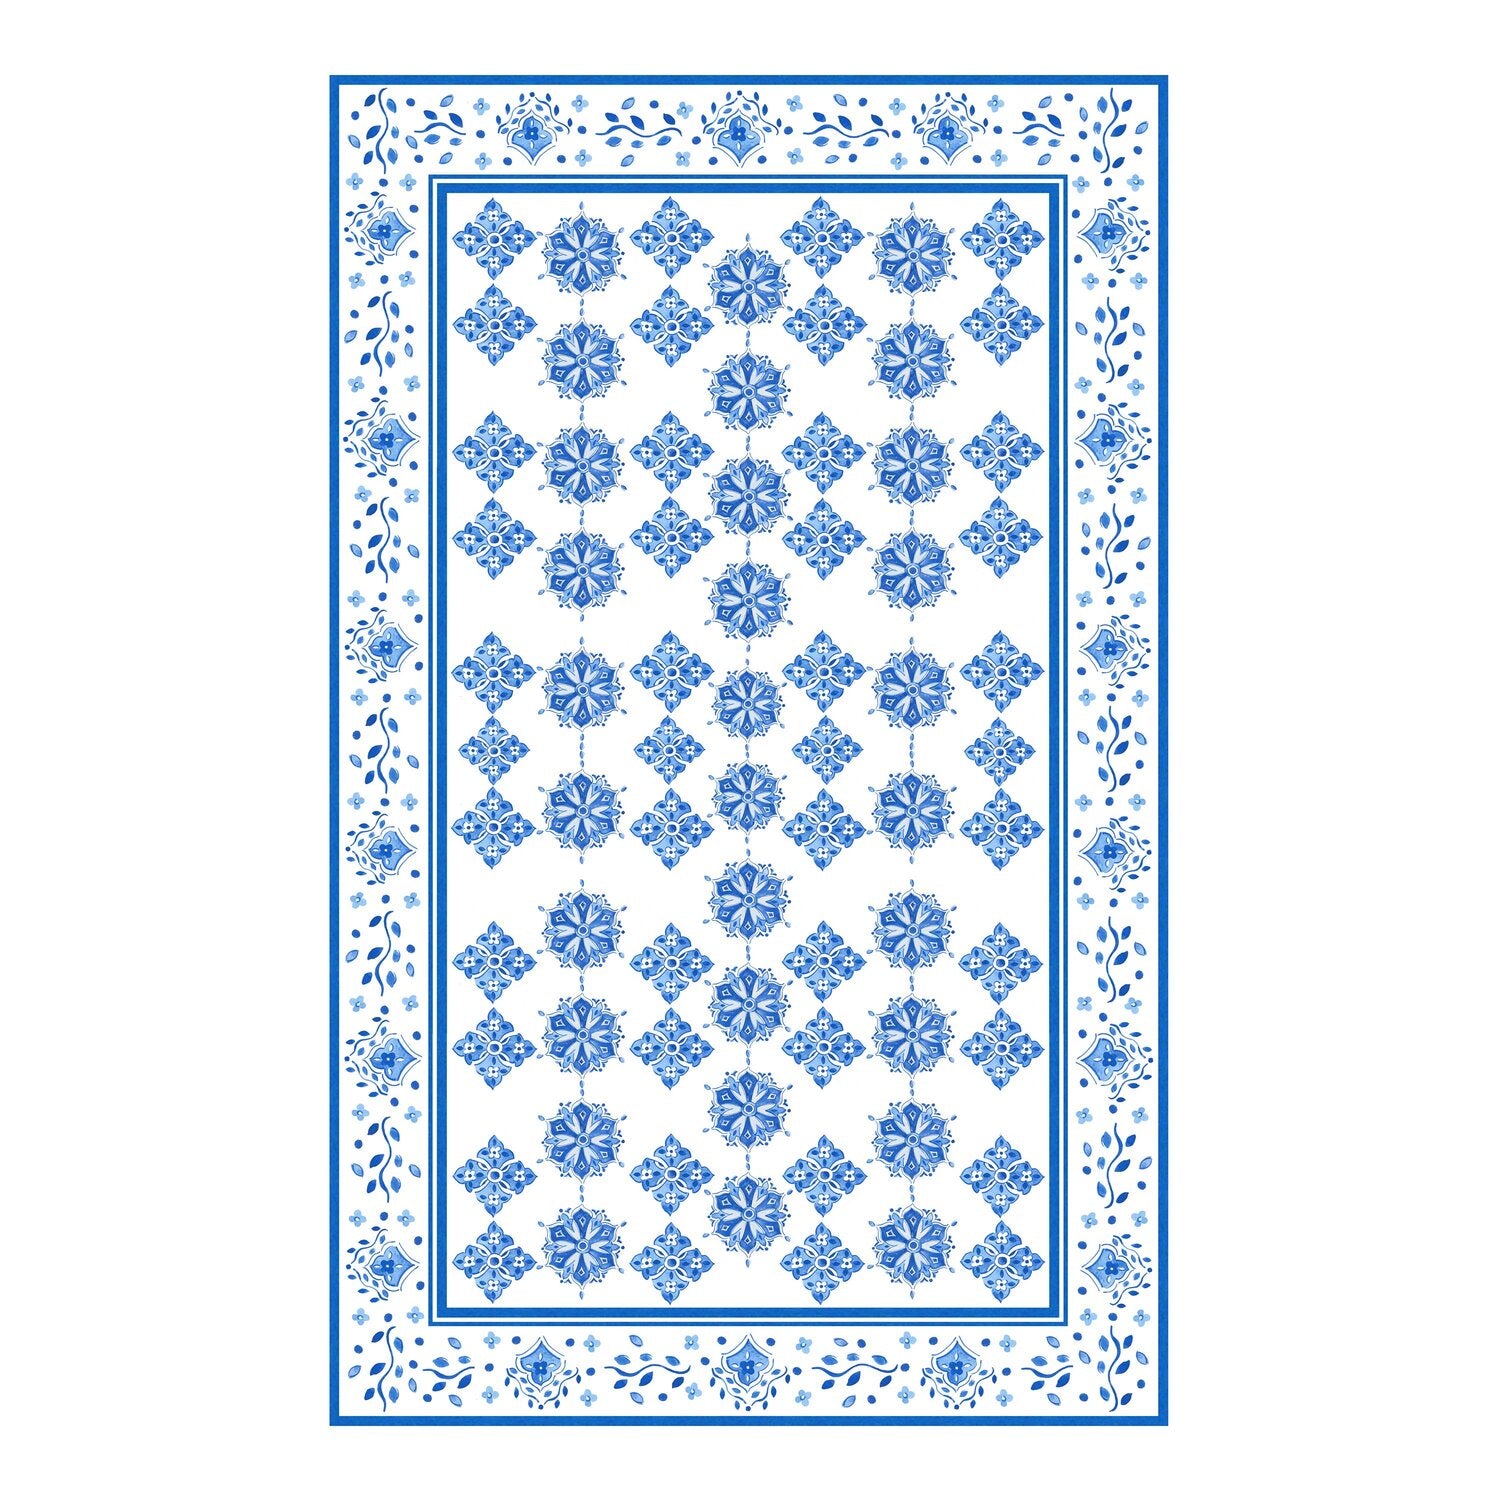 Le Cadeaux Spoon Rest With Tea Towel Gift Set – Moroccan Blue